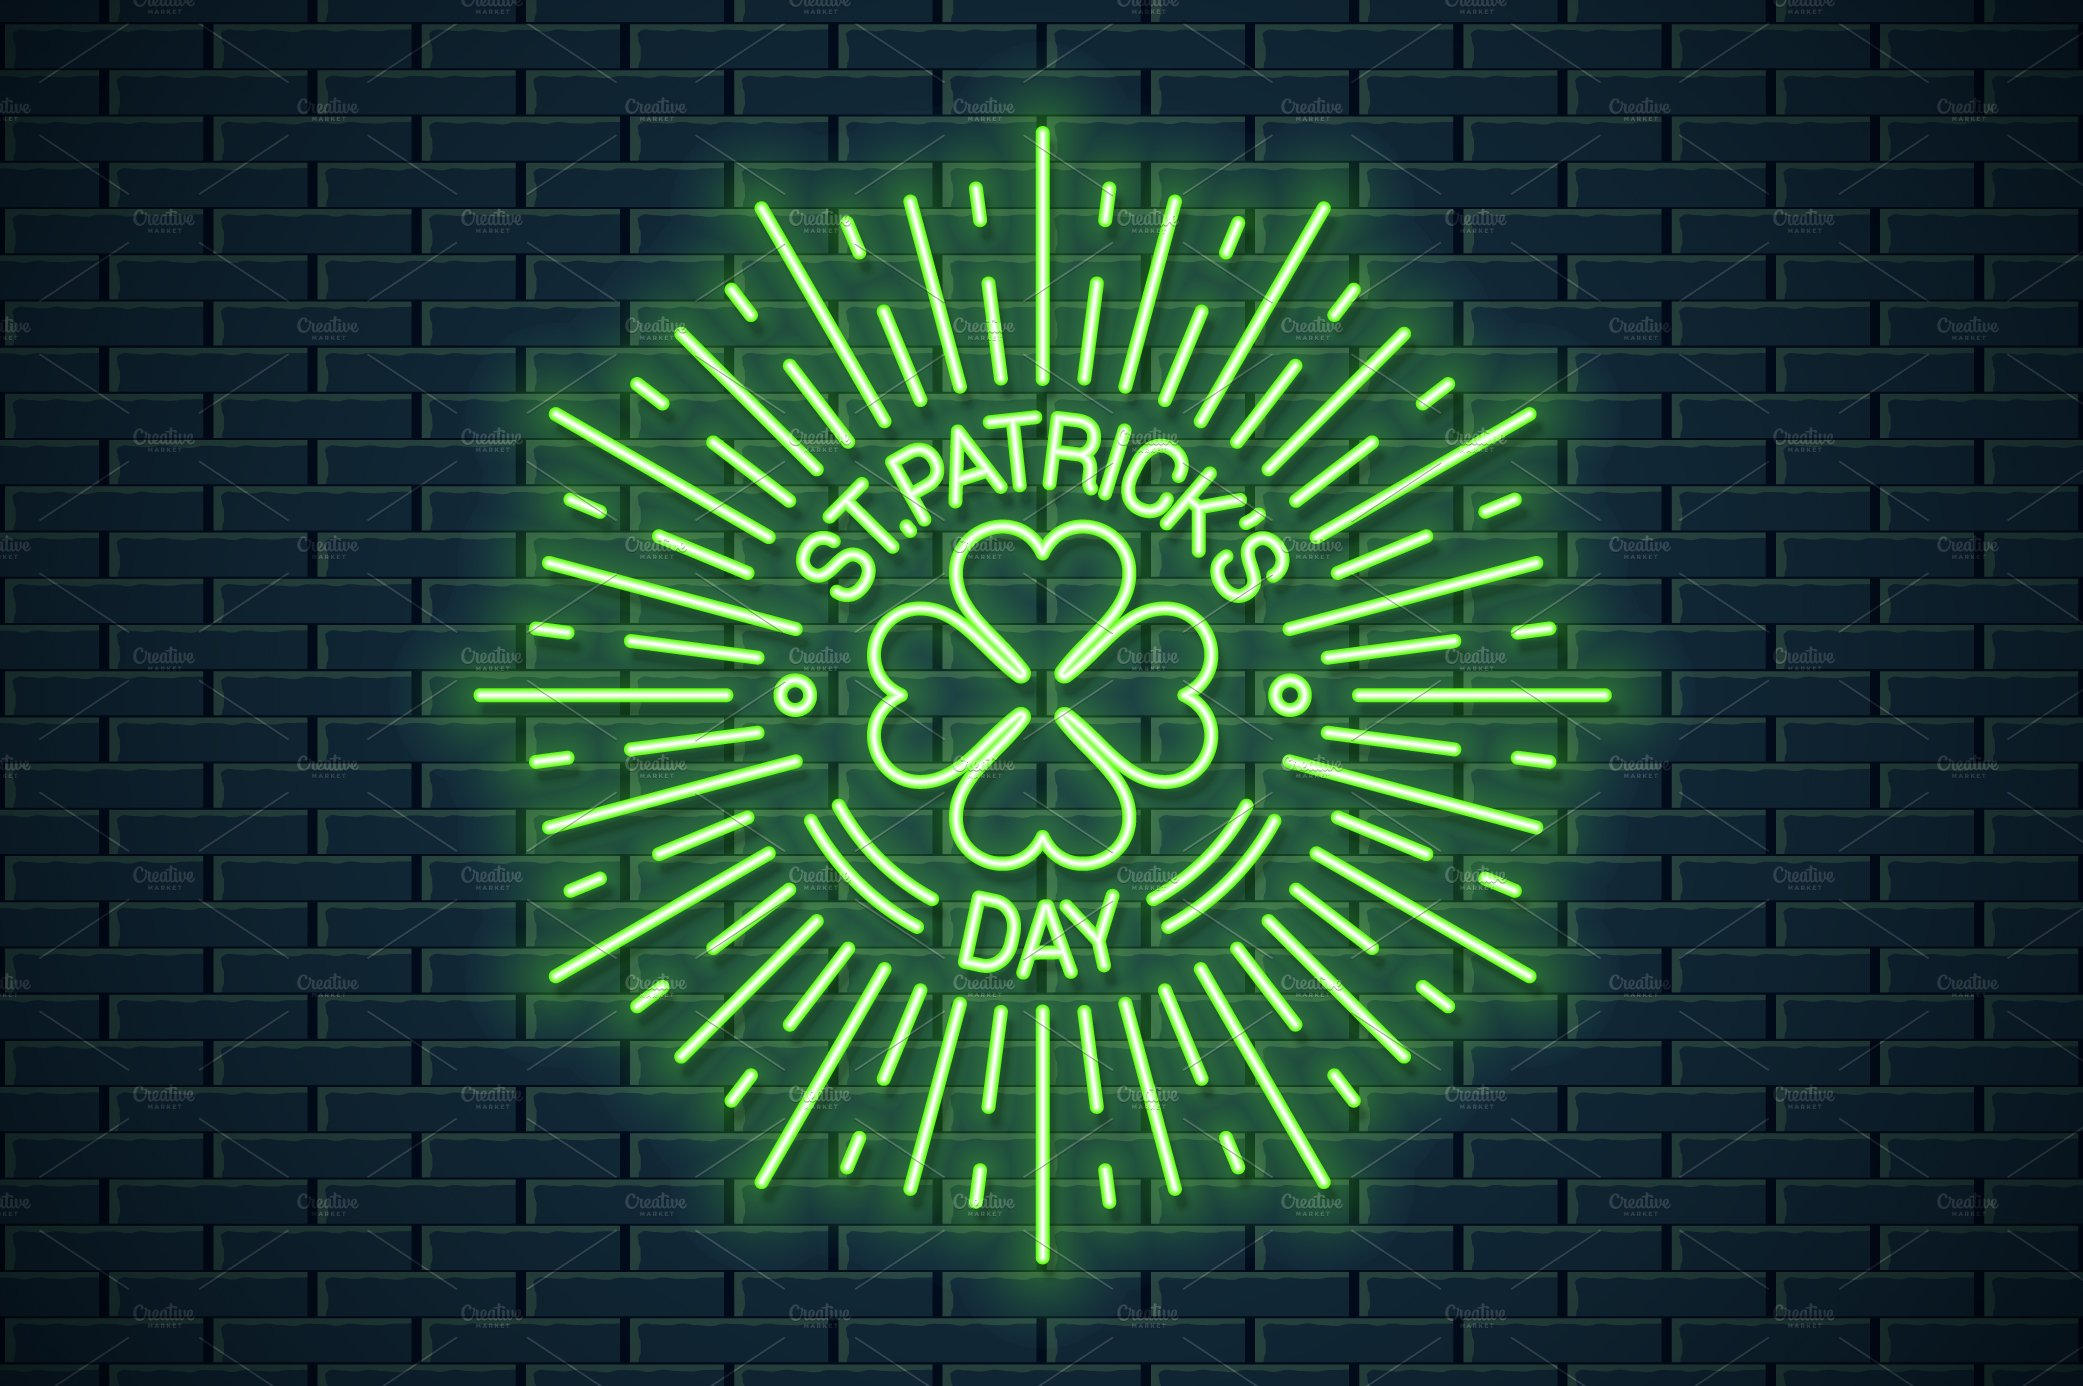 Patricks day neon logo. cover image.